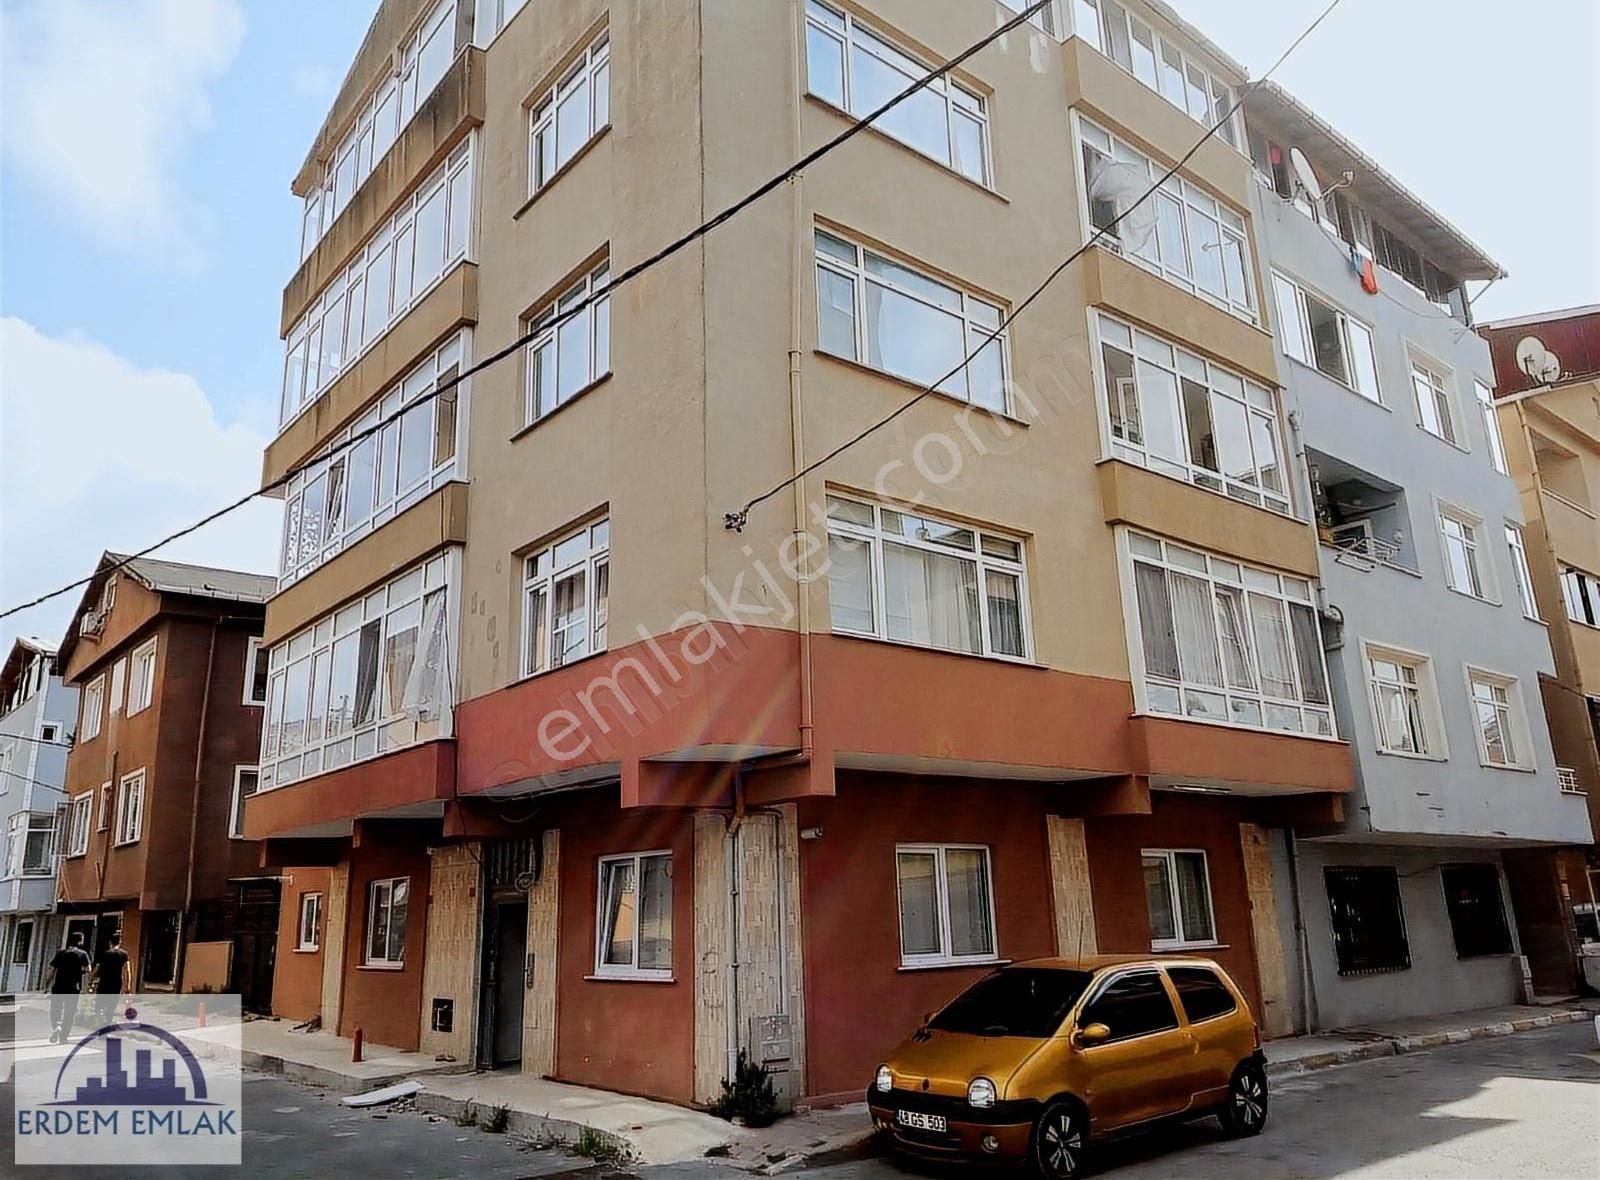 Sarıyer Ptt Evleri Satılık Bina BÜYÜKDERE PTT EVLERİNDE SATILIK 5 KATLI BİNA